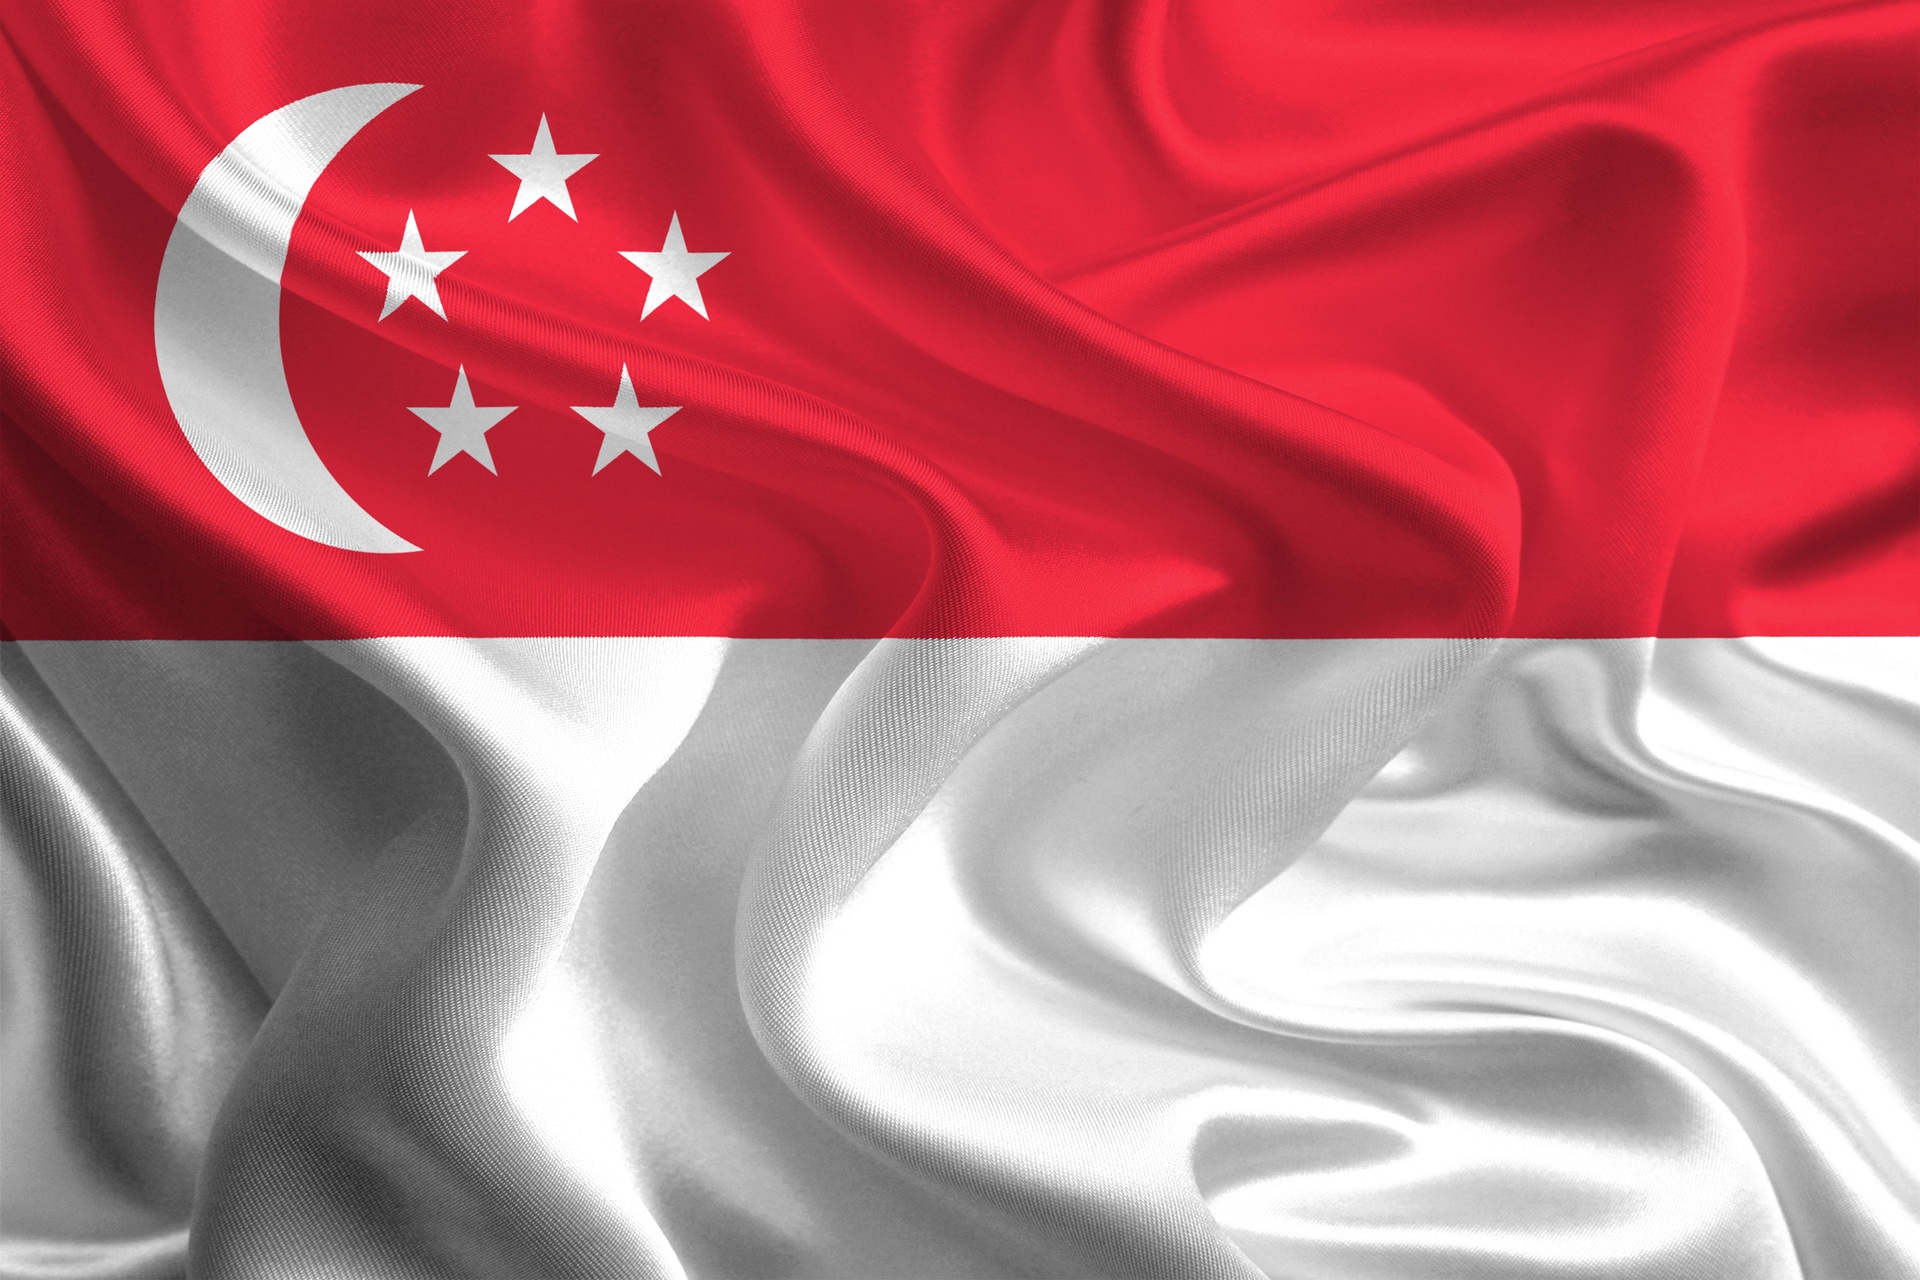 सिंगापुर कंपनी निर्माण सिंगापुर कंपनी निर्माण फिडुलिंक कंपनी निर्माण